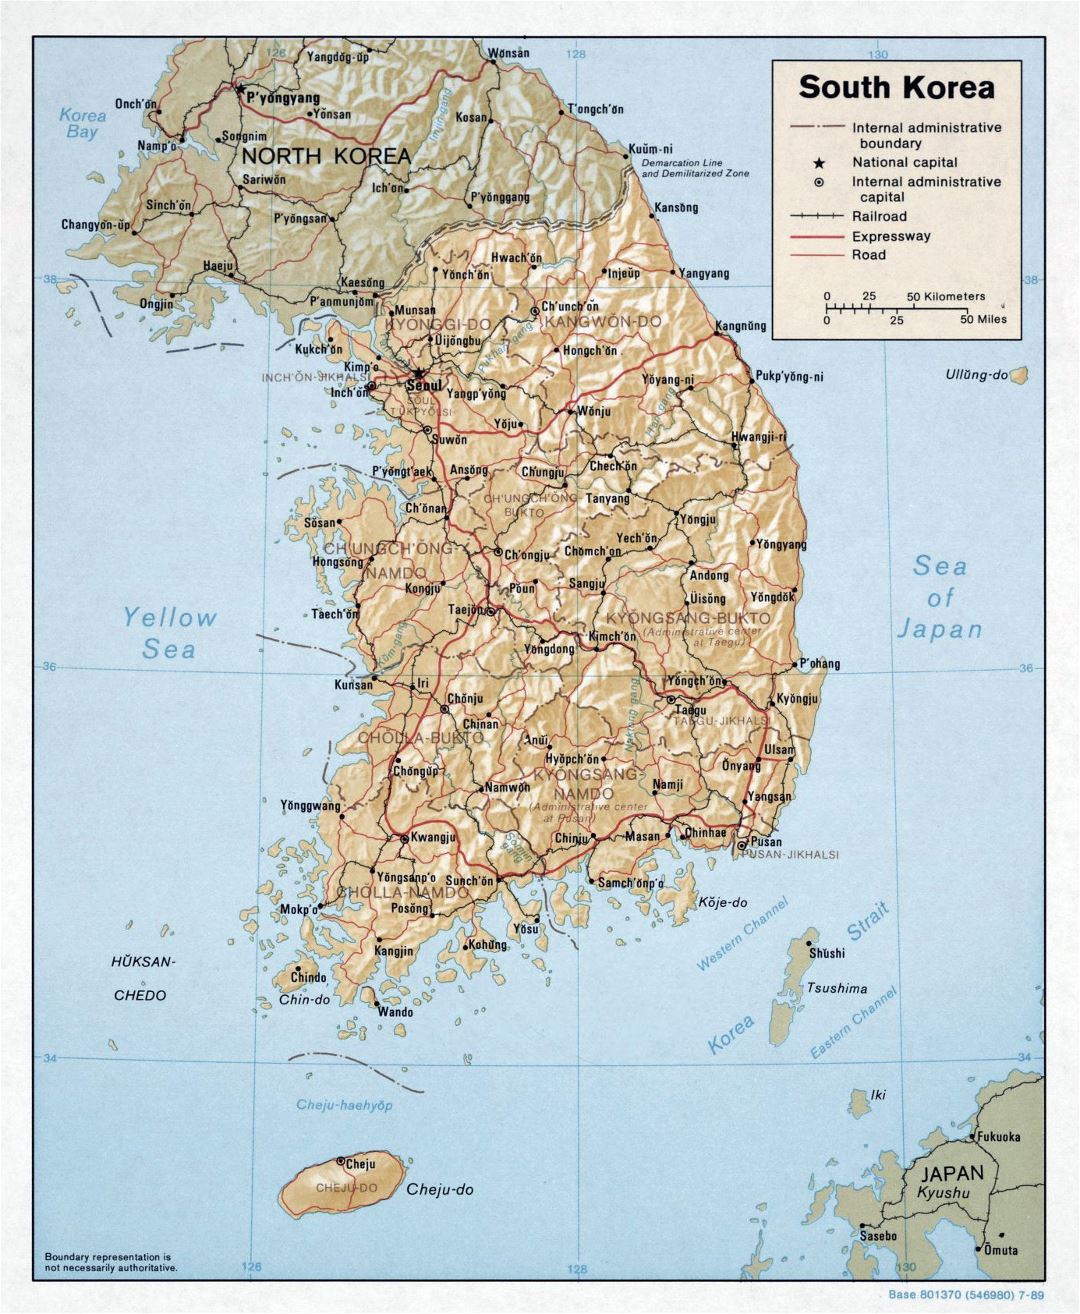 Grande mapa político y administrativo de Corea del Sur con relieve, carreteras, ferrocarriles y principales ciudades - 1989